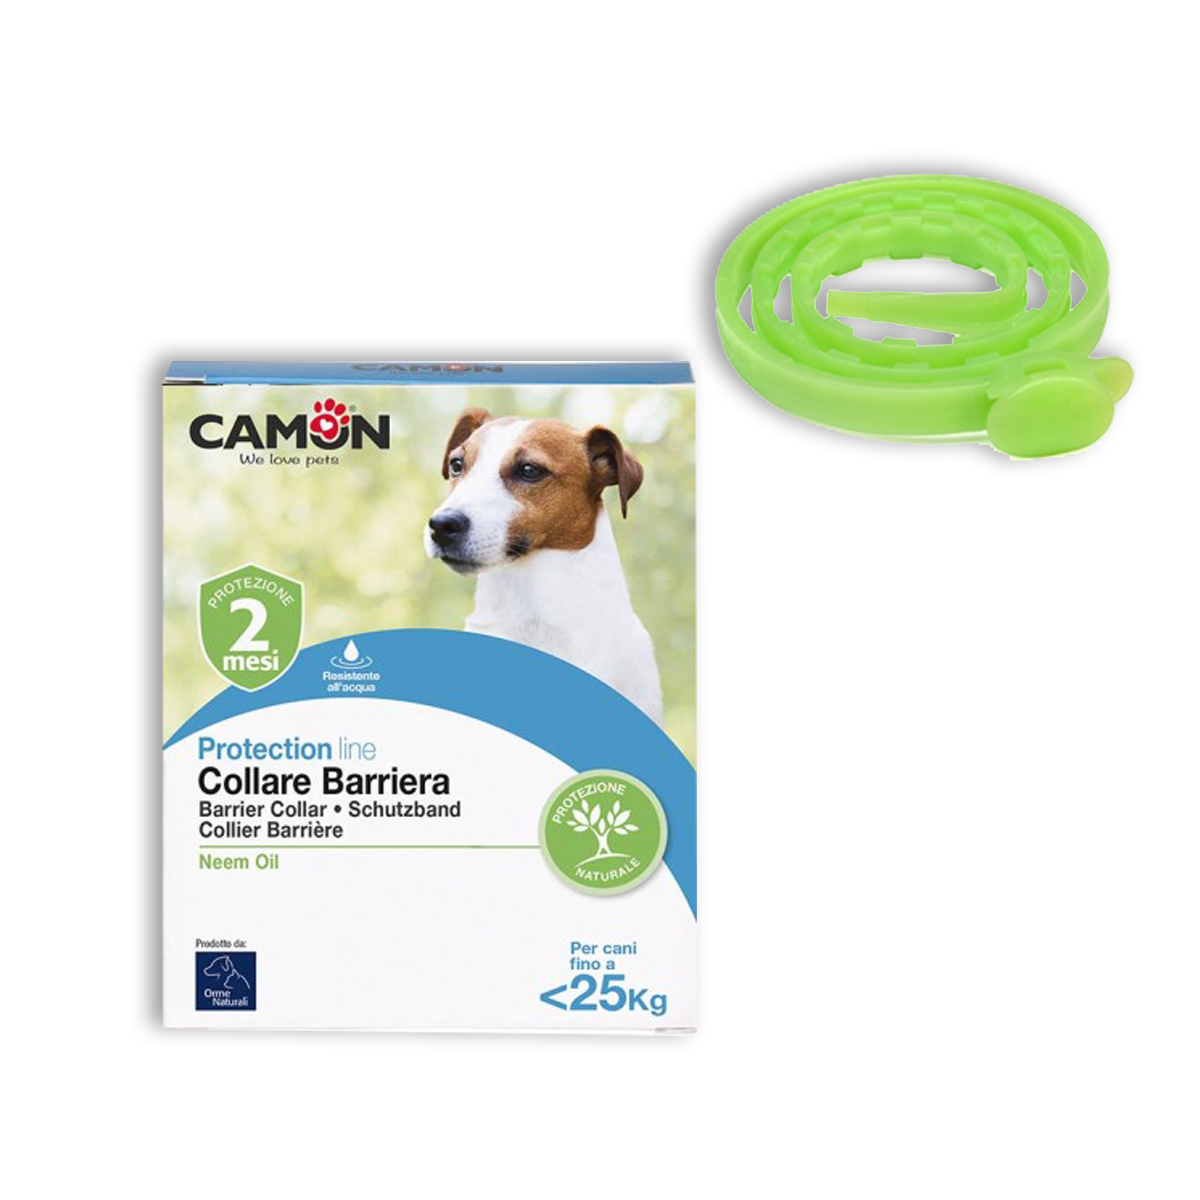 Antiparassitari - releoneanimalstore - Collare barriera oil Neem Camon  Protection line 60 cm per cani